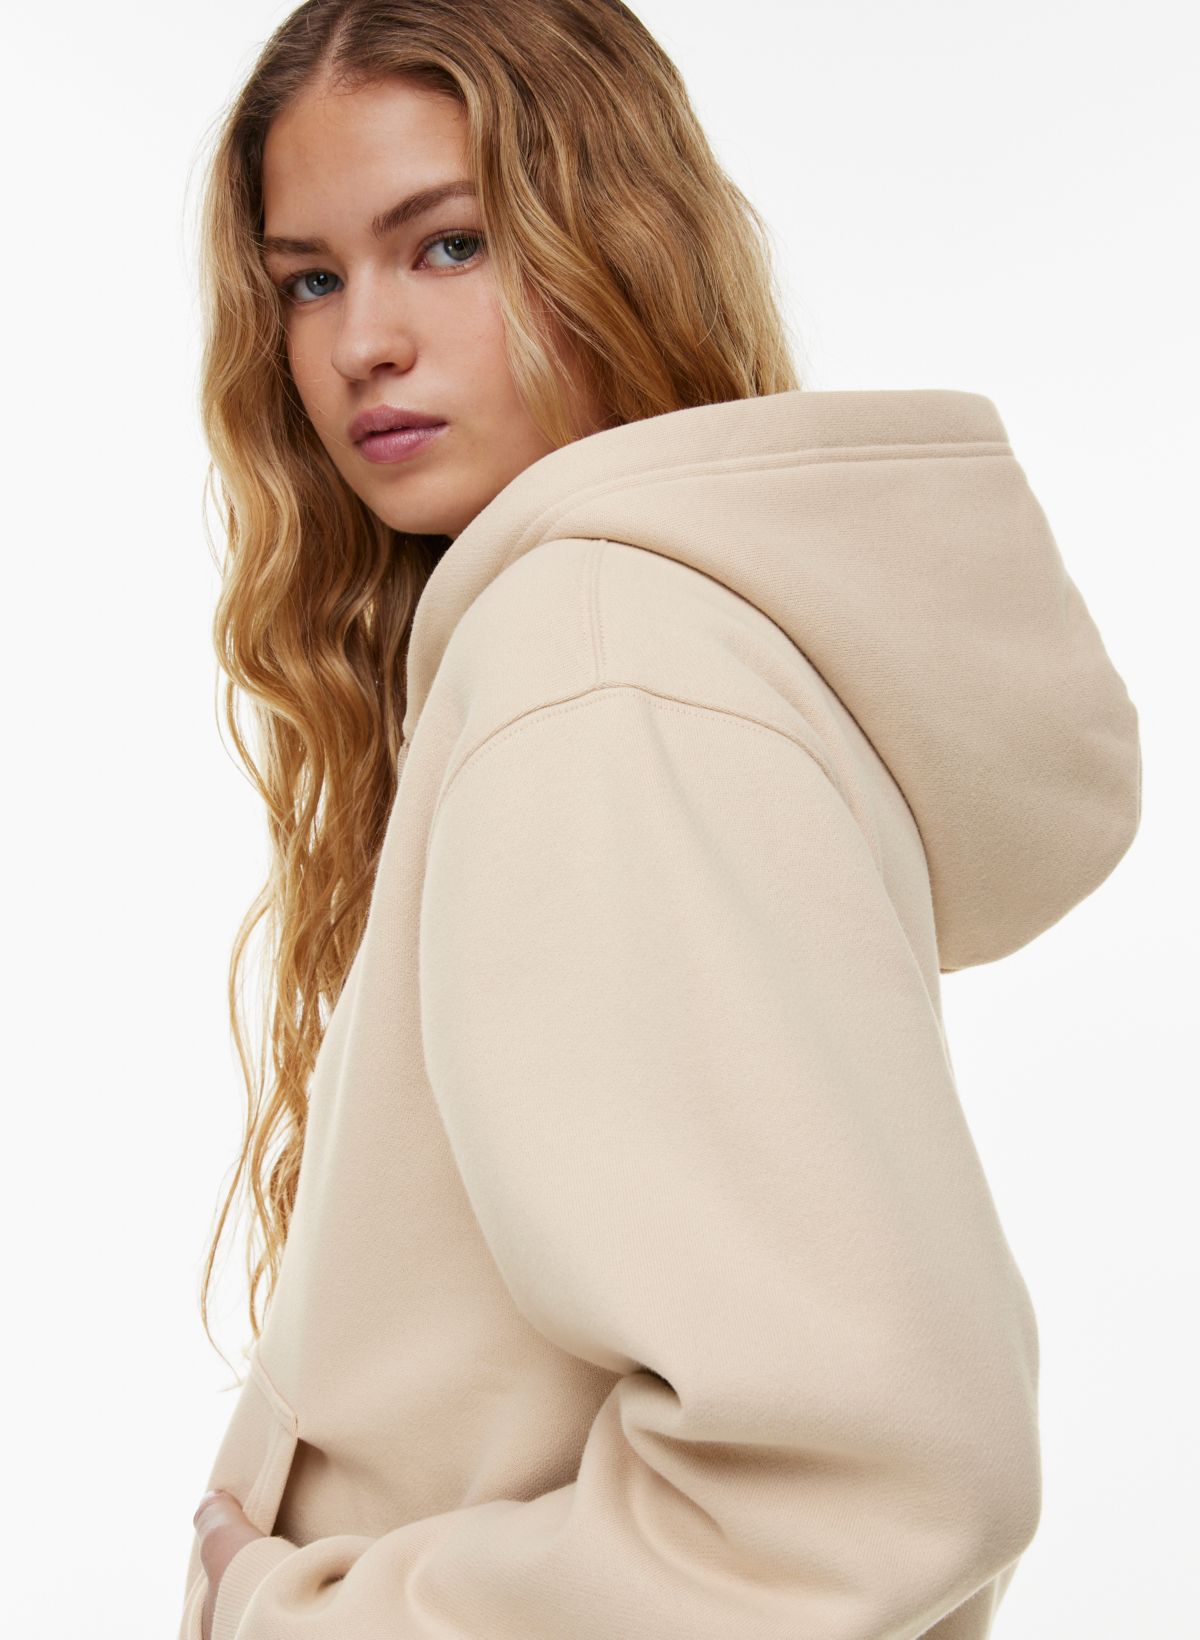 cozy fleece perfect zip hoodie